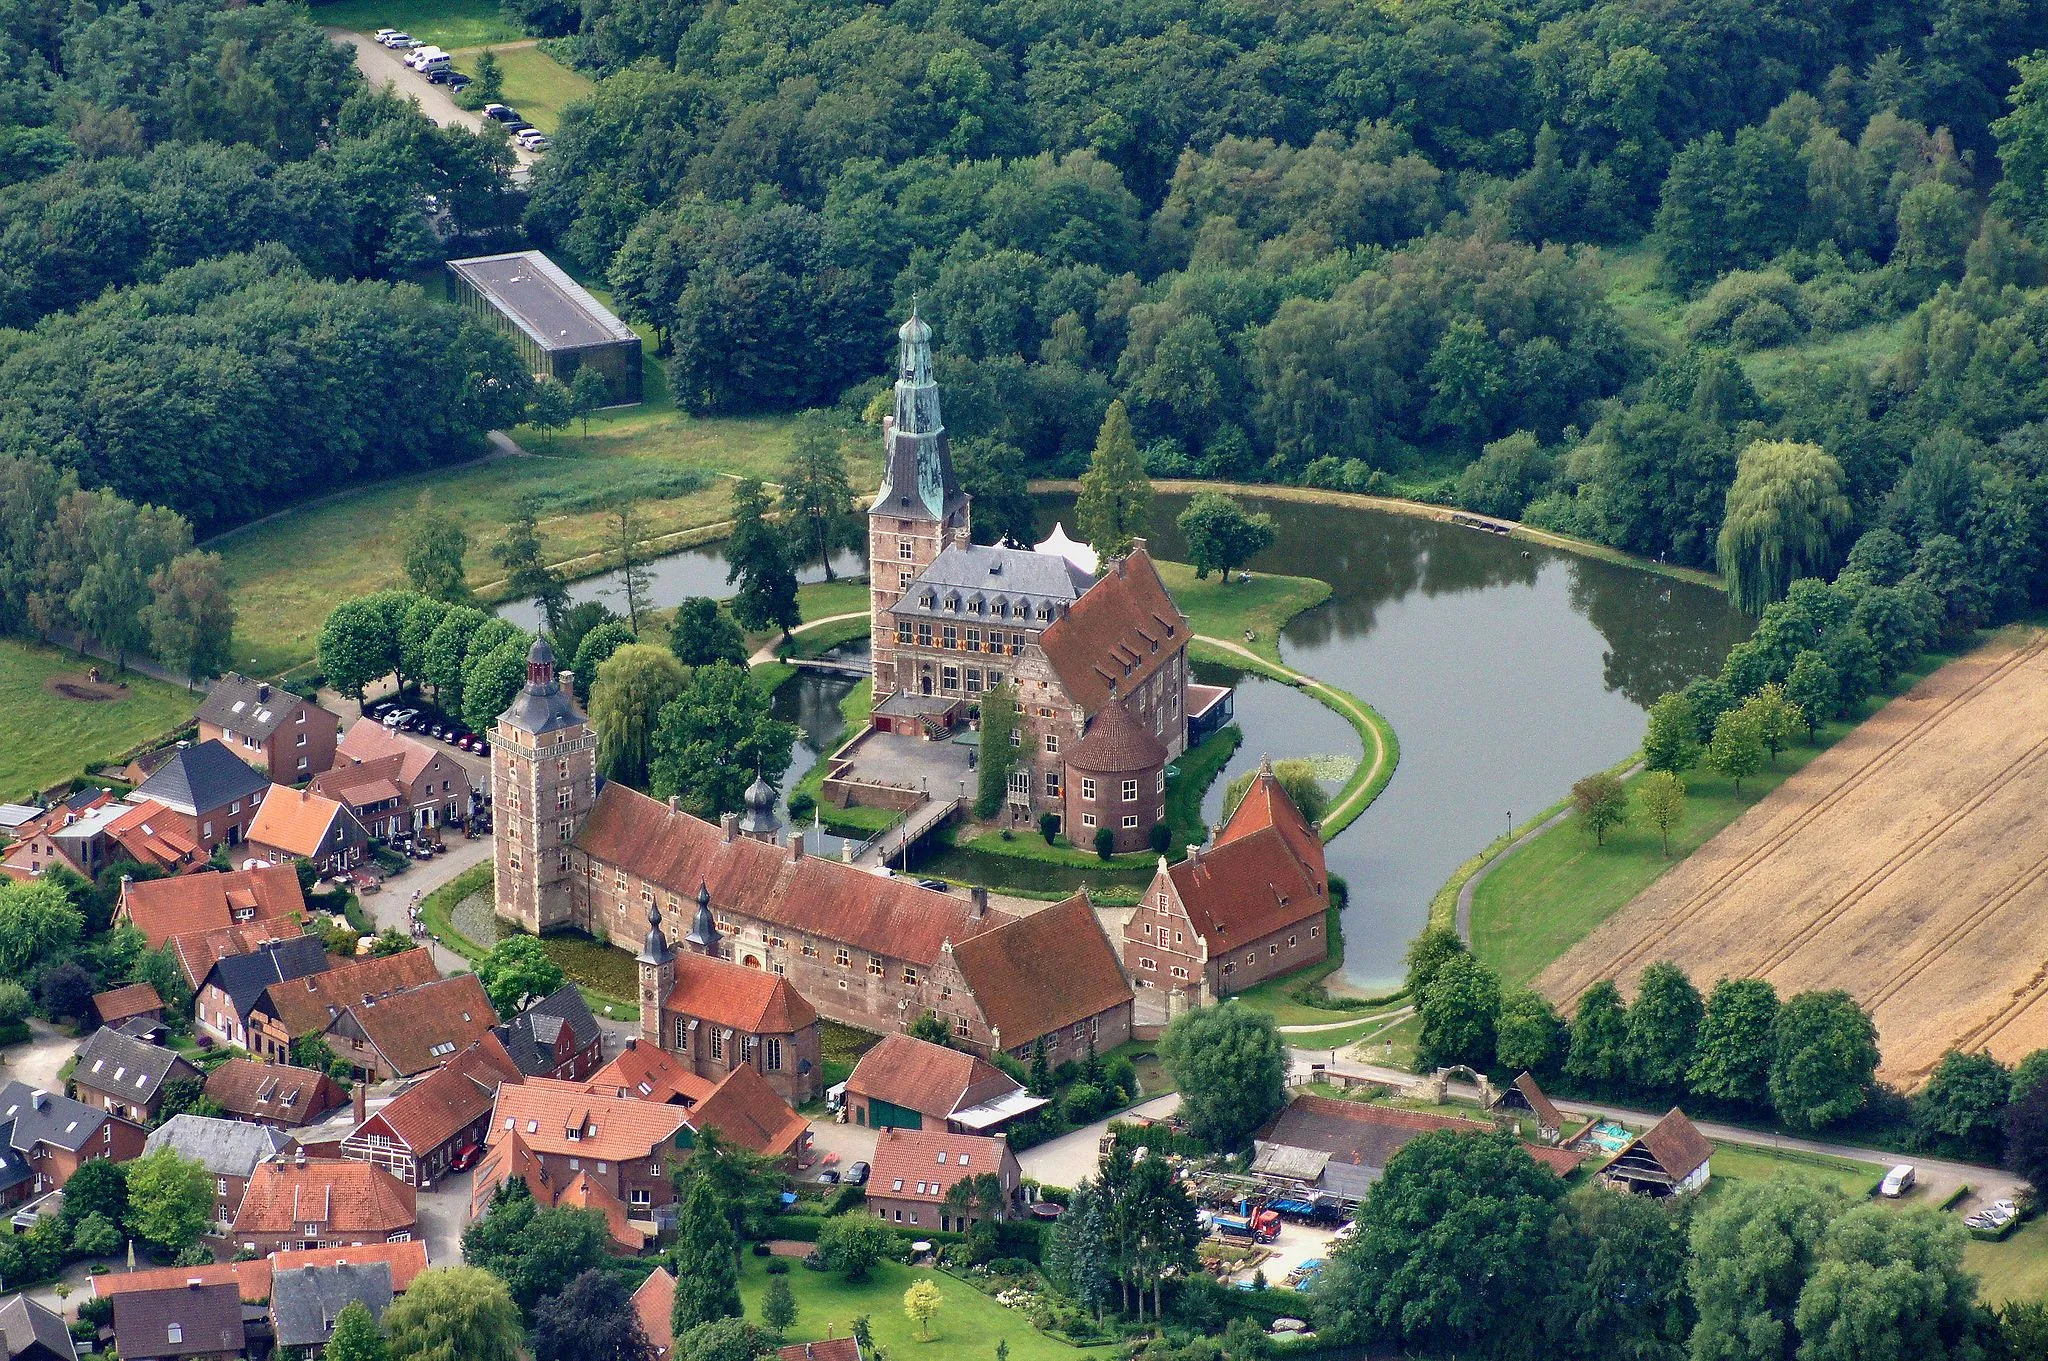 Photo showing: The castle of Raesfeld is situated in Raesfeld, district of Borken in North Rhine-Westphalia, Germany.